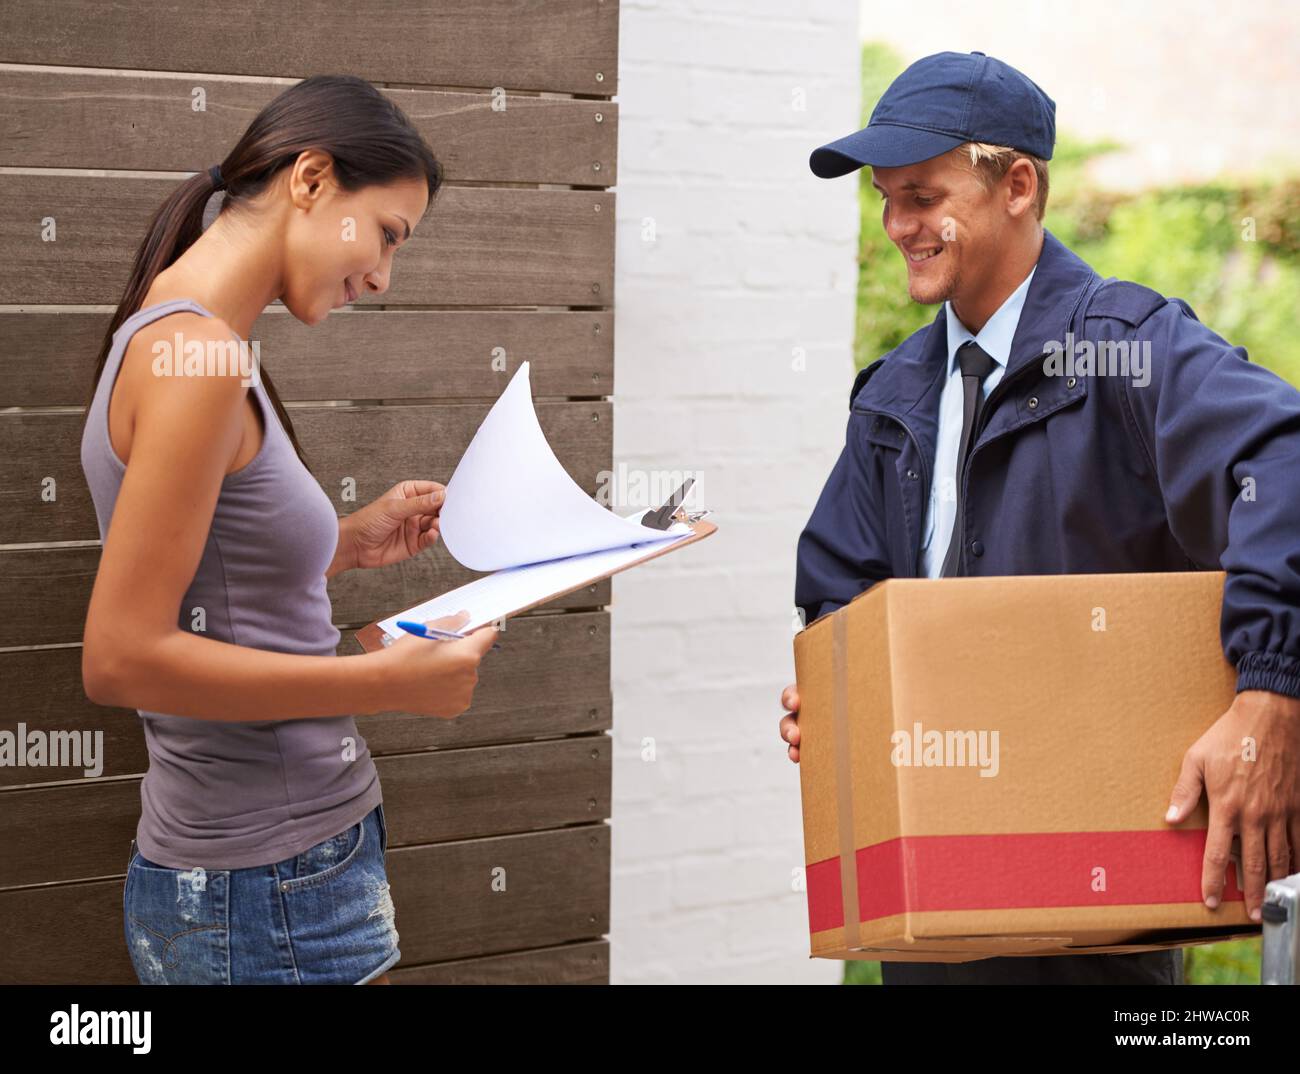 Assicurarsi che la documentazione sia in ordine. Scatto ritagliato di una bella donna che riceve una consegna. Foto Stock